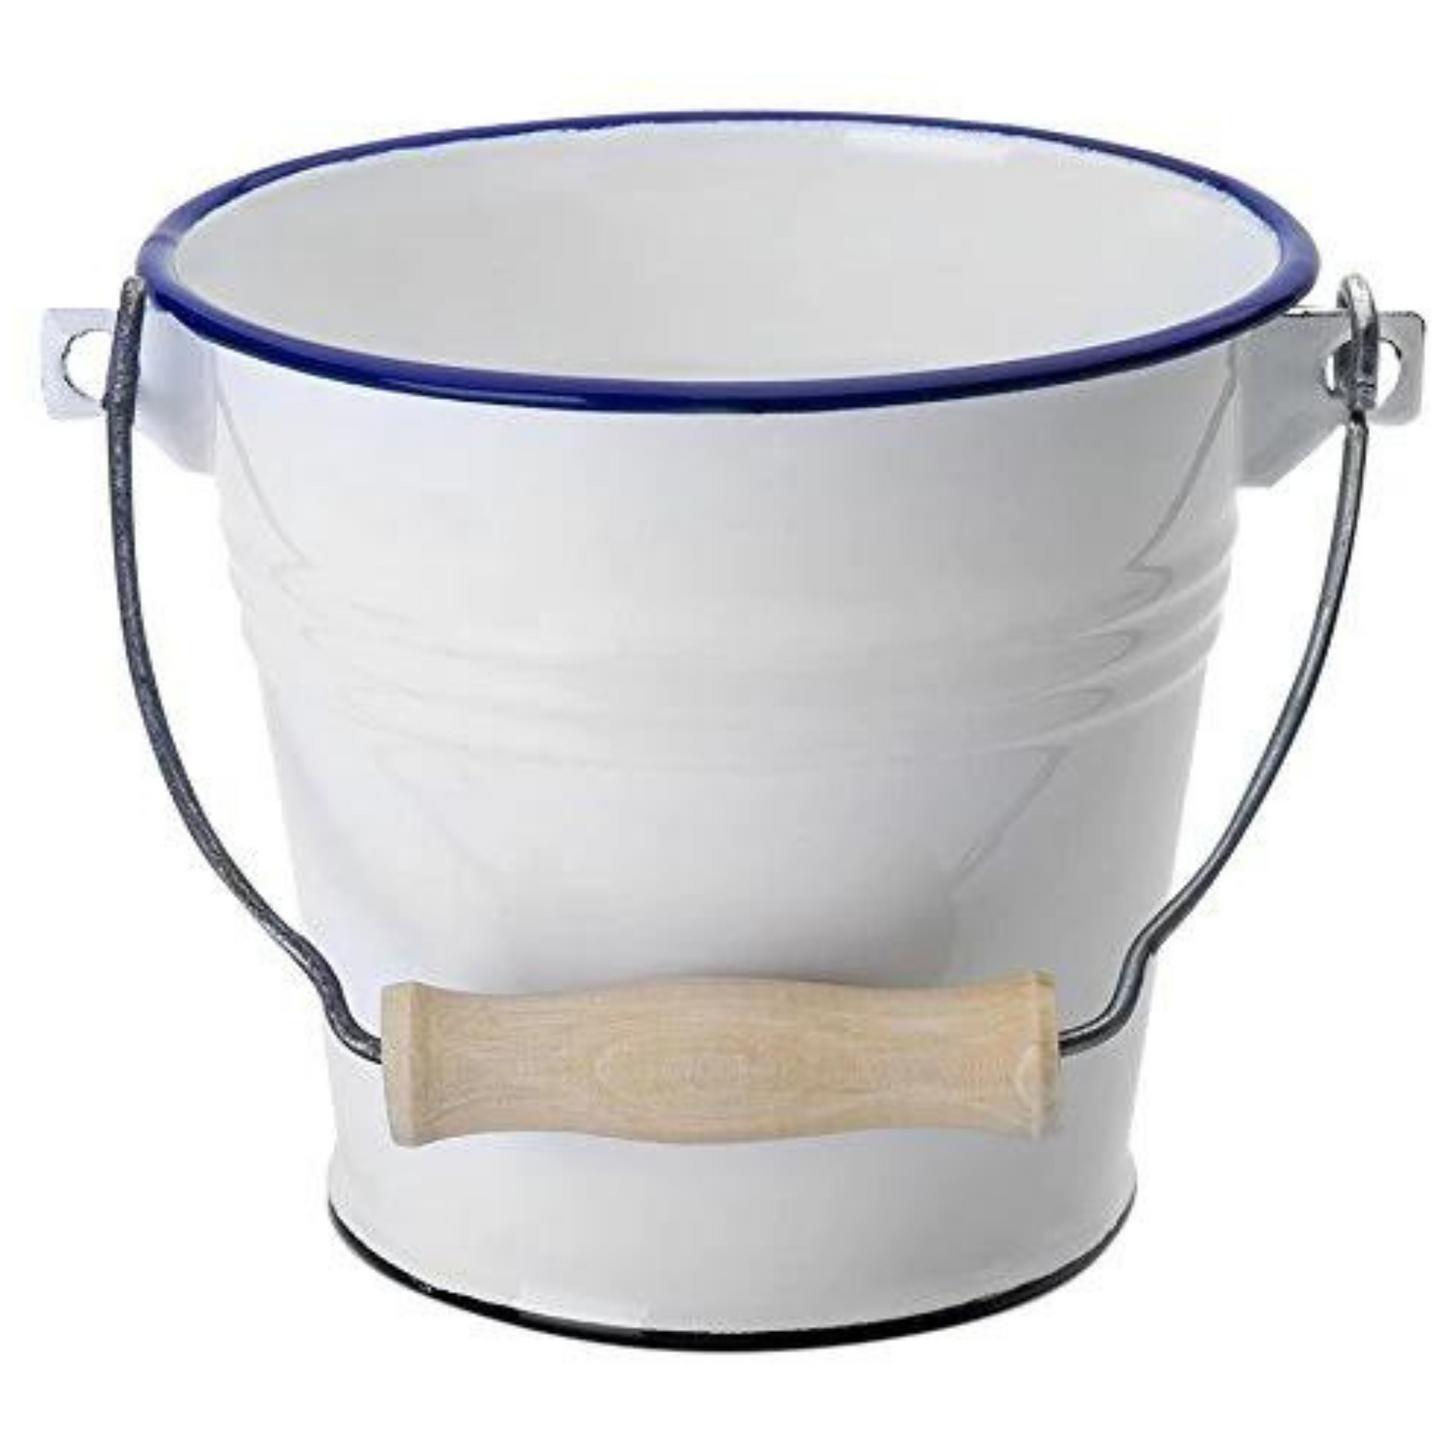 Enamel bucket